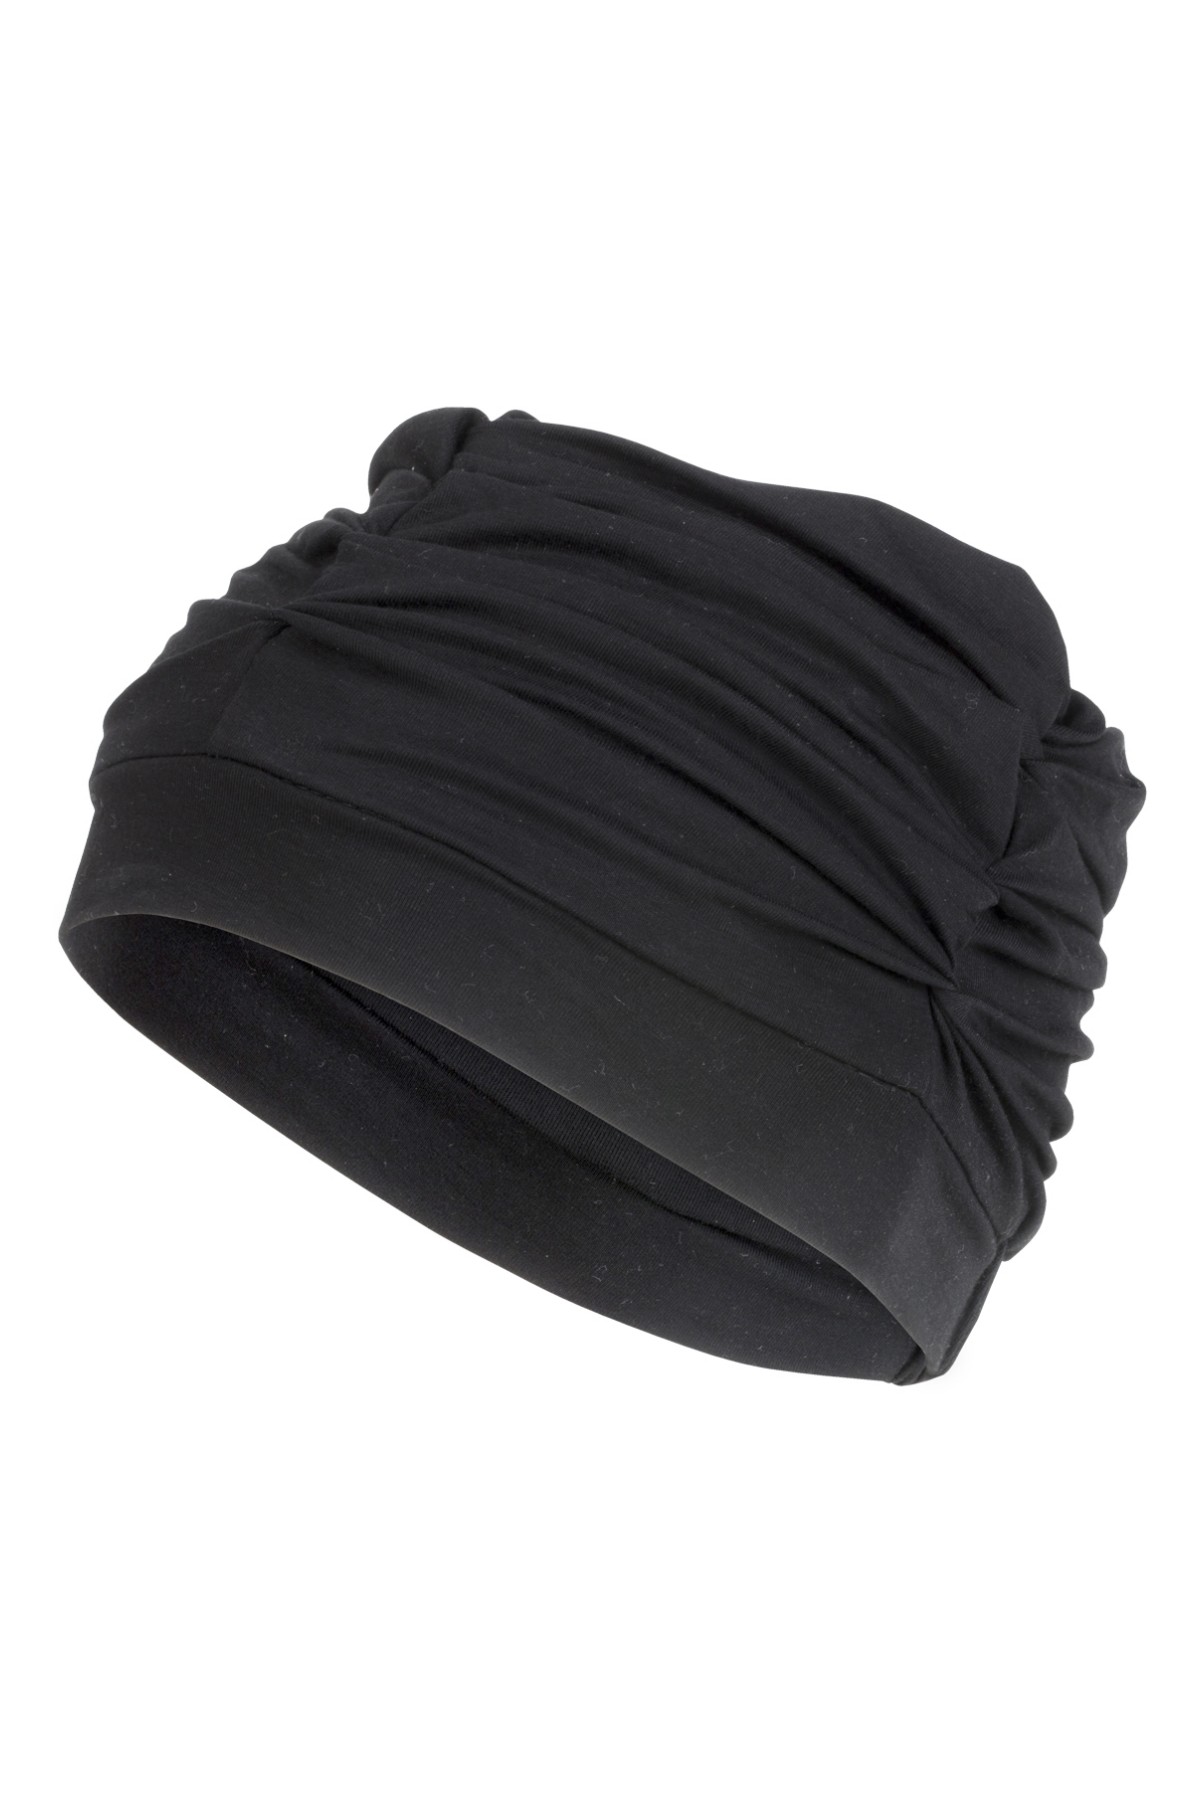 Bonnet Turban Confort et Volume